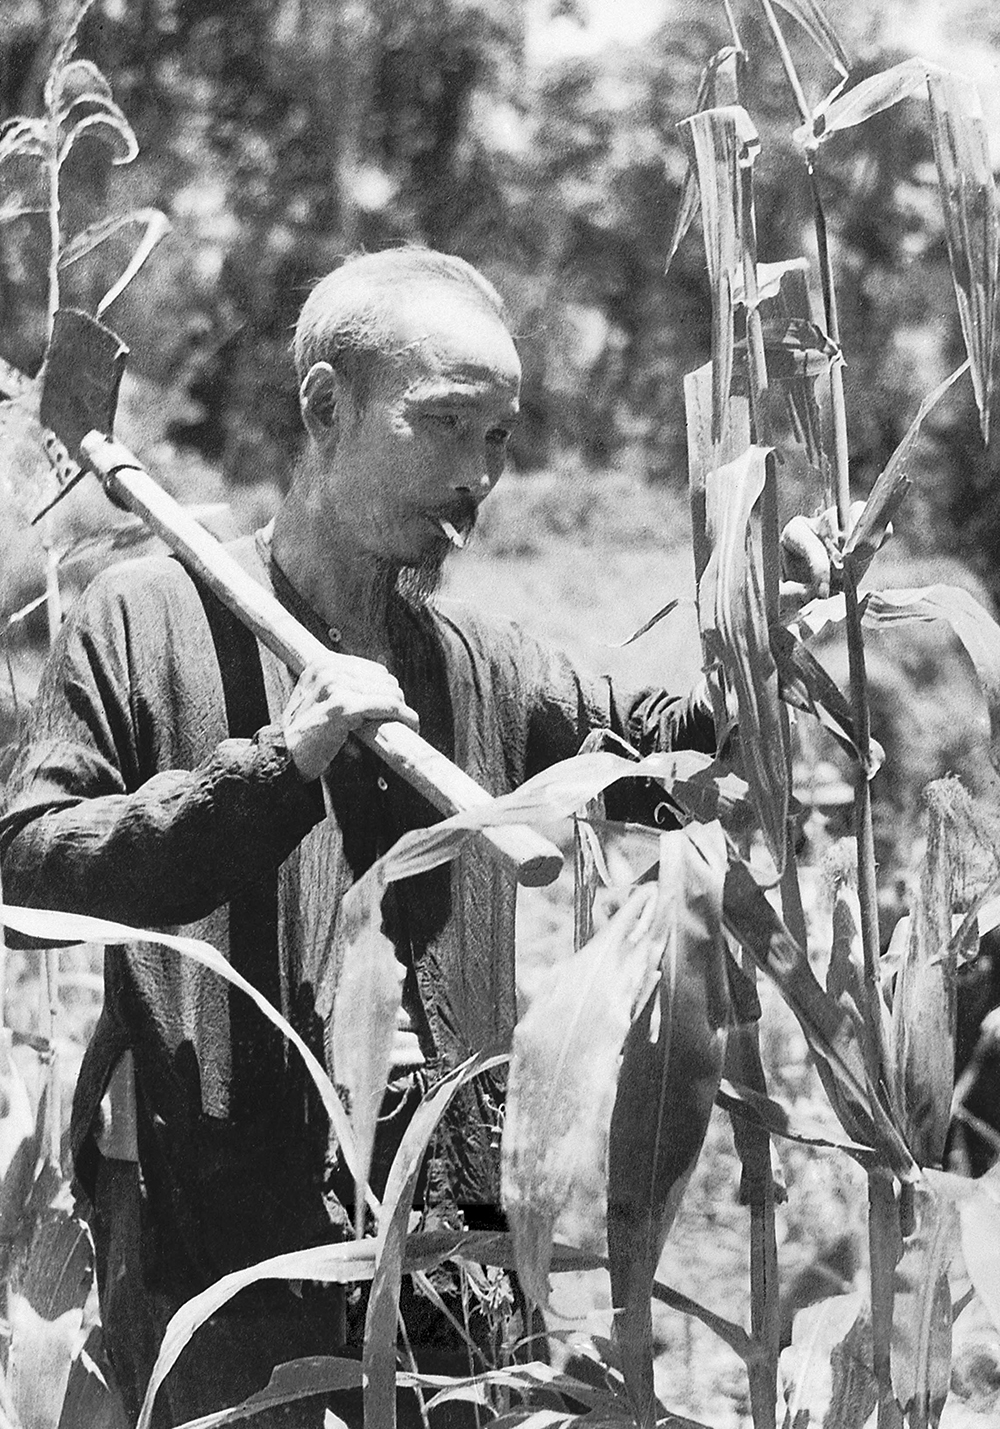 Chủ tịch Hồ Chí Minh kêu gọi đồng bào và chiến sĩ thực hiện khẩu hiệu: “Thực túc binh cường”, và hằng ngày Người dành thời gian tăng gia sản xuất